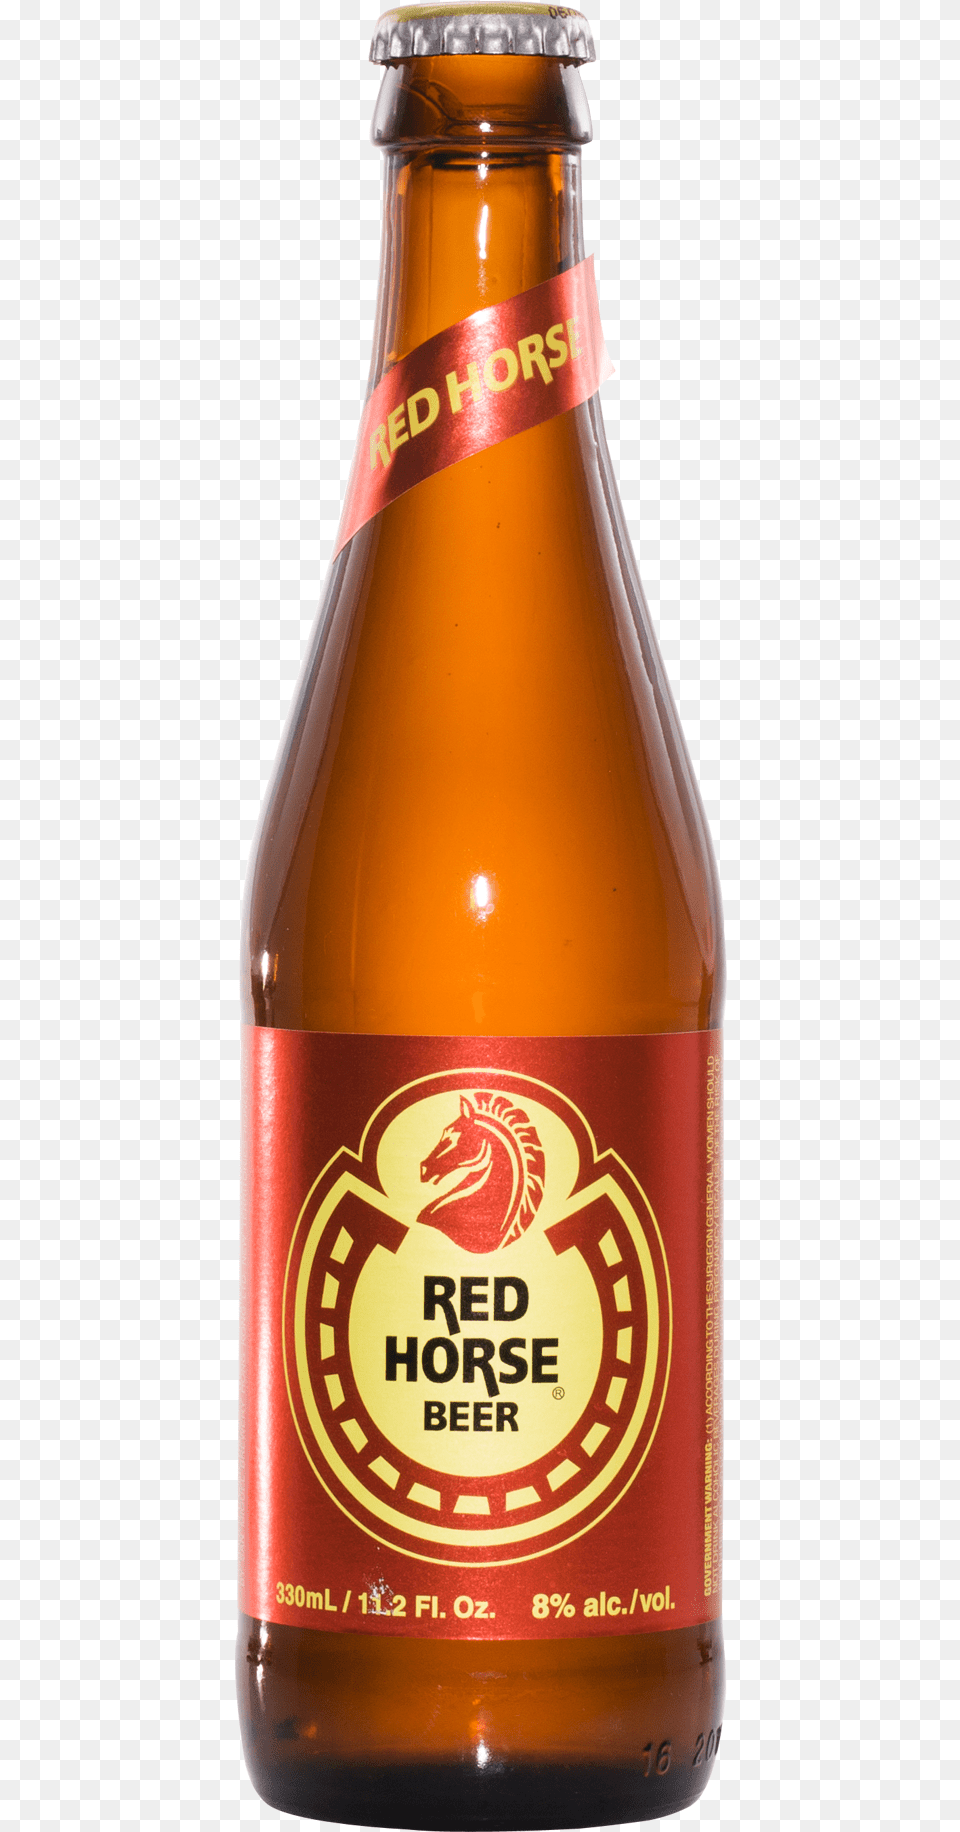 San Miguel Buy Beer New Red Horse Stallion, Alcohol, Beer Bottle, Beverage, Bottle Free Png